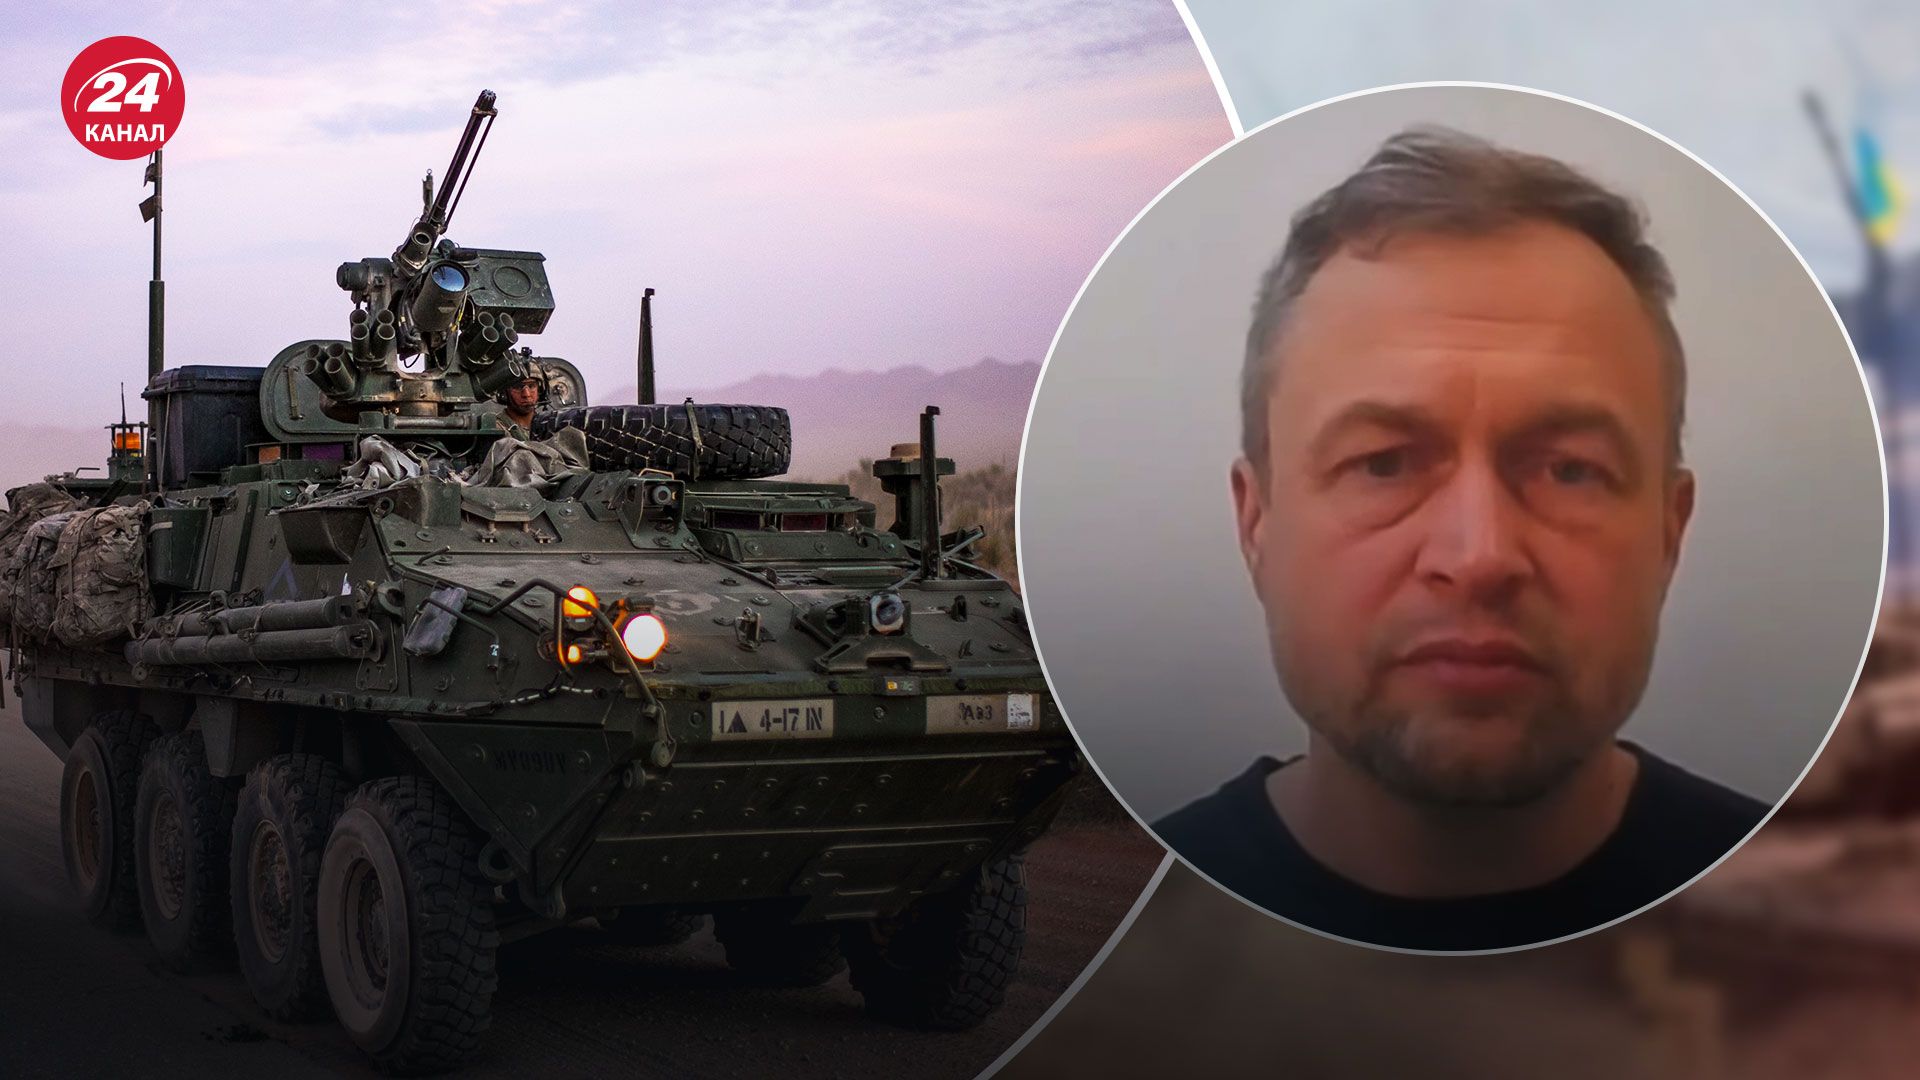 БТР Stryker для України – військовий експерт назвав основі переваги - 24 Канал